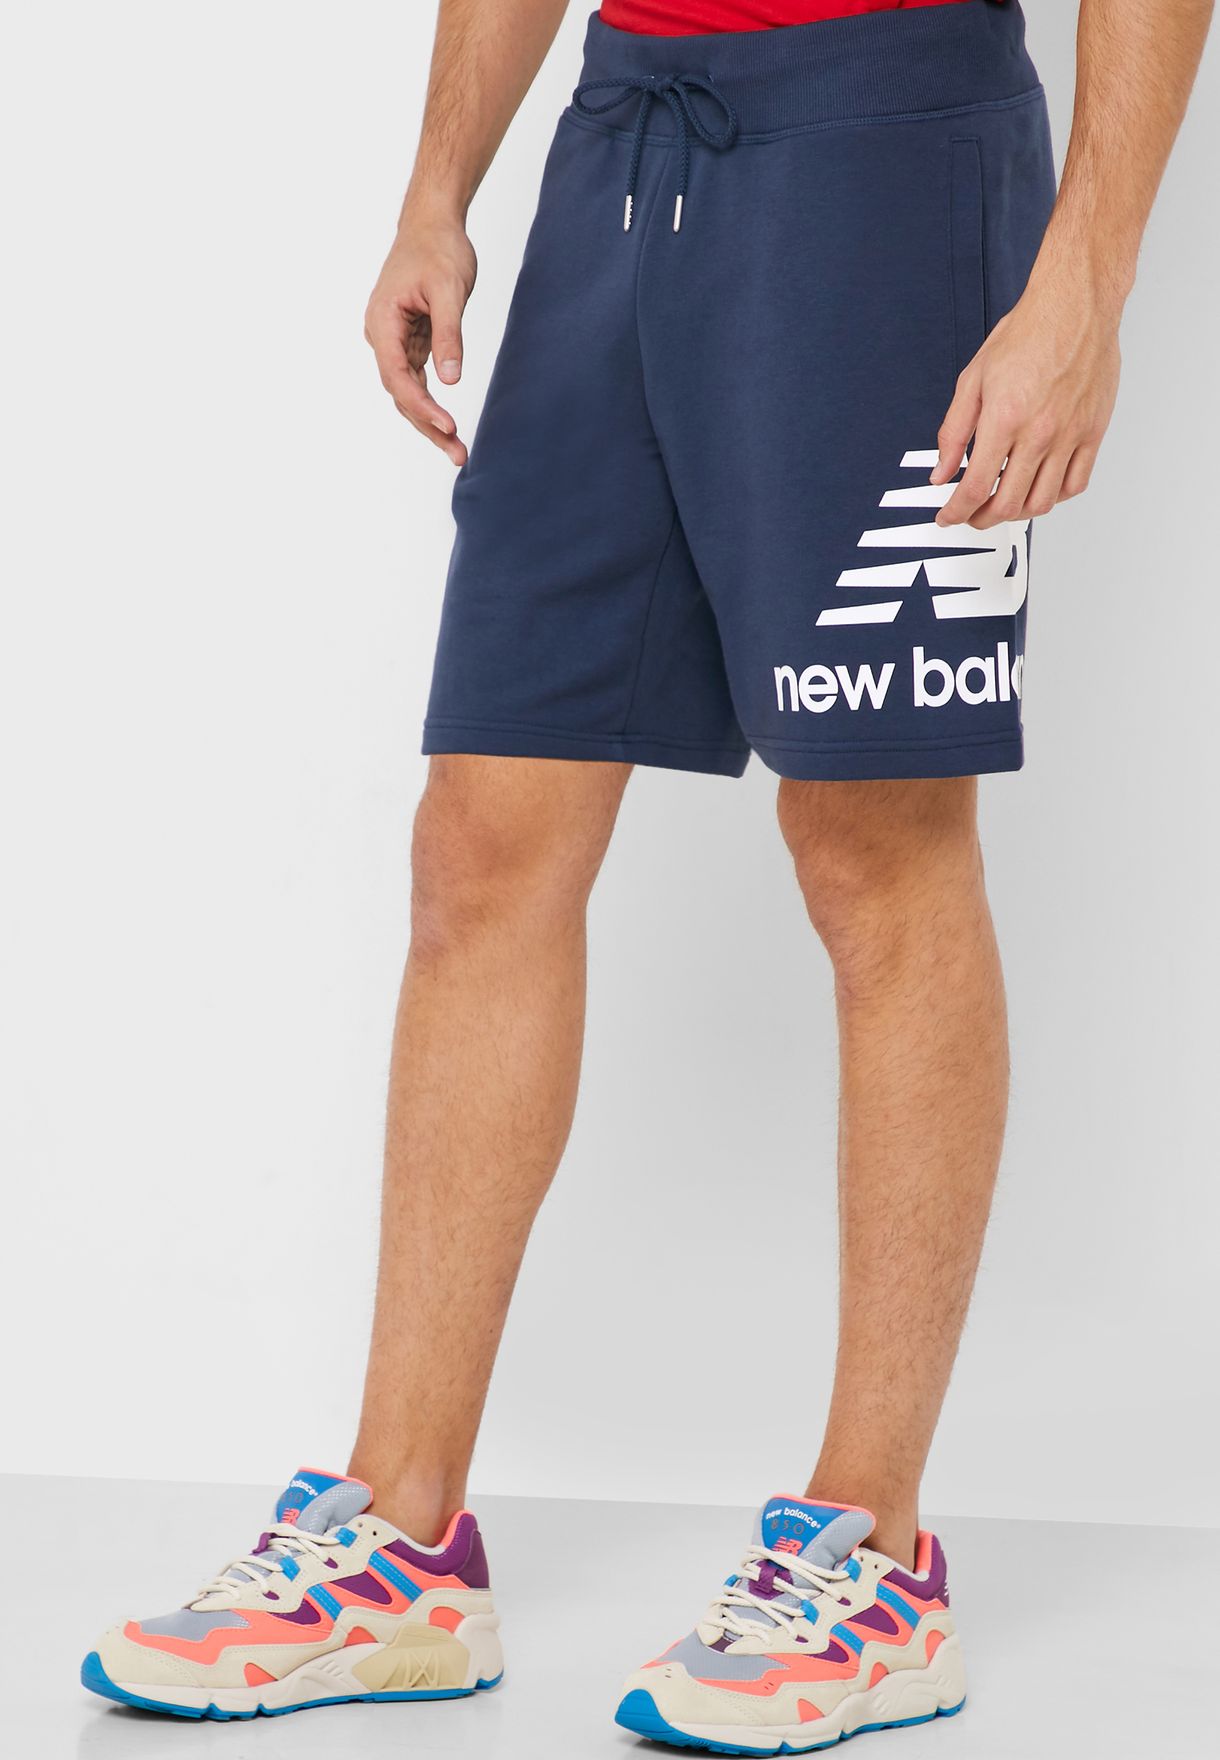 new balance shorts mens